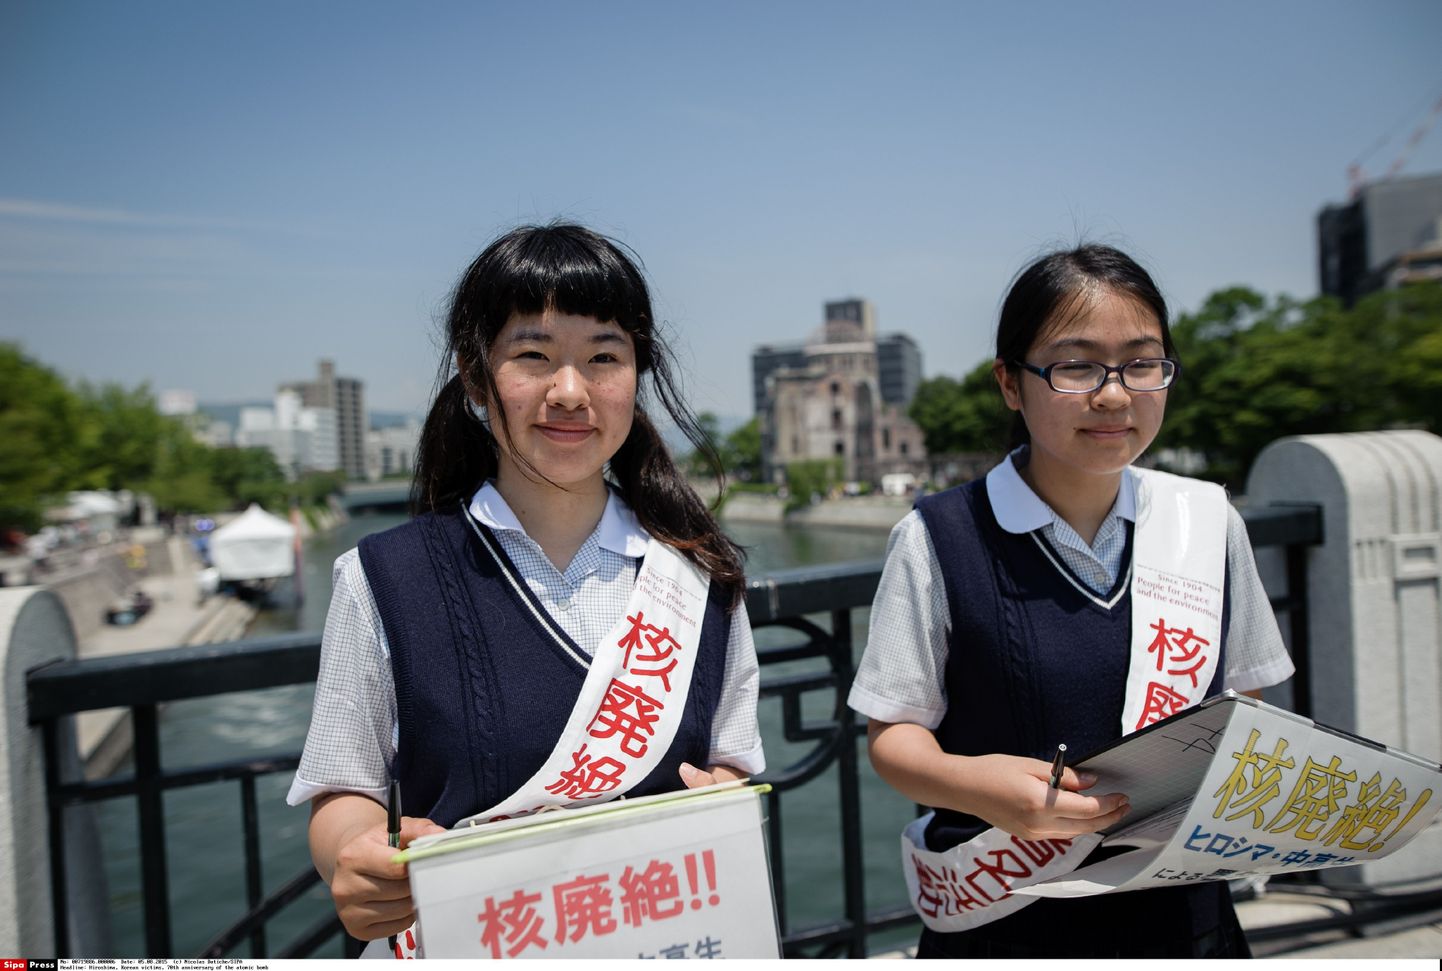 Kaks keskkoolitüdrukut Hiroshima kesklinnas hoidmas loosungeid, millega nõuavad tuumarelvade vastase sildi püstitamist.